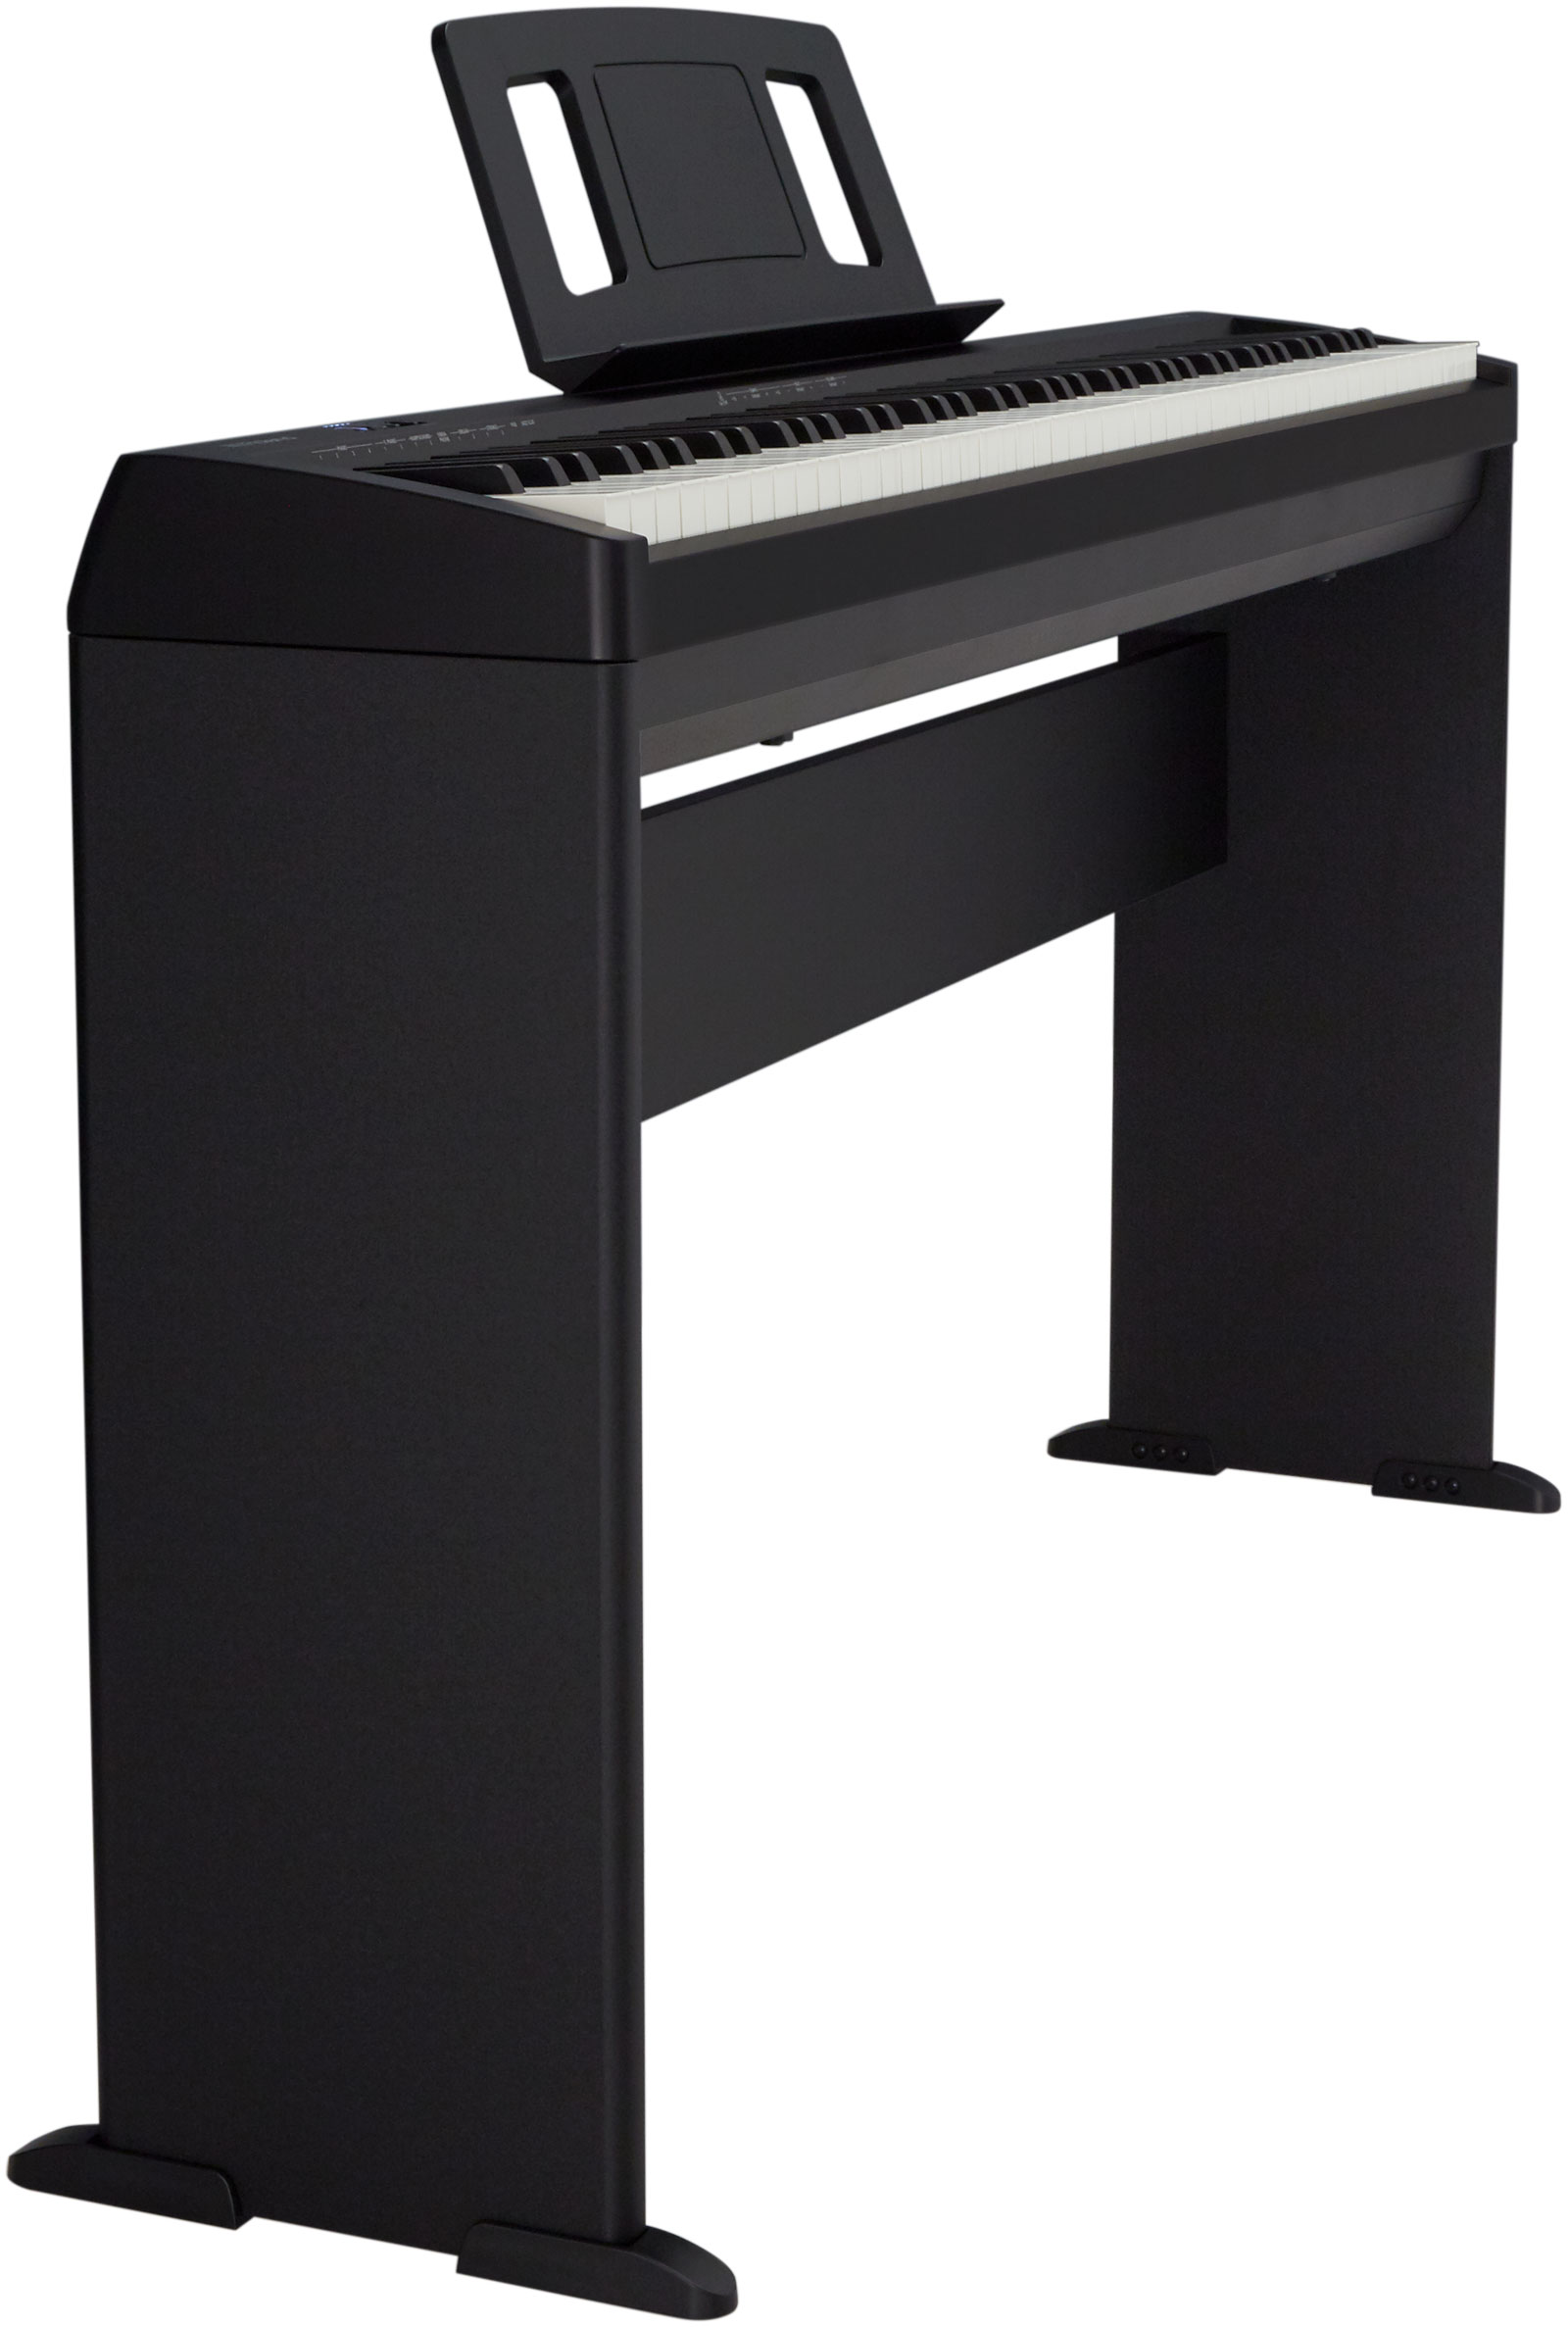 Roland Fp-10 Bk + Stand  Kscfp10 - Piano digital portatil - Variation 1